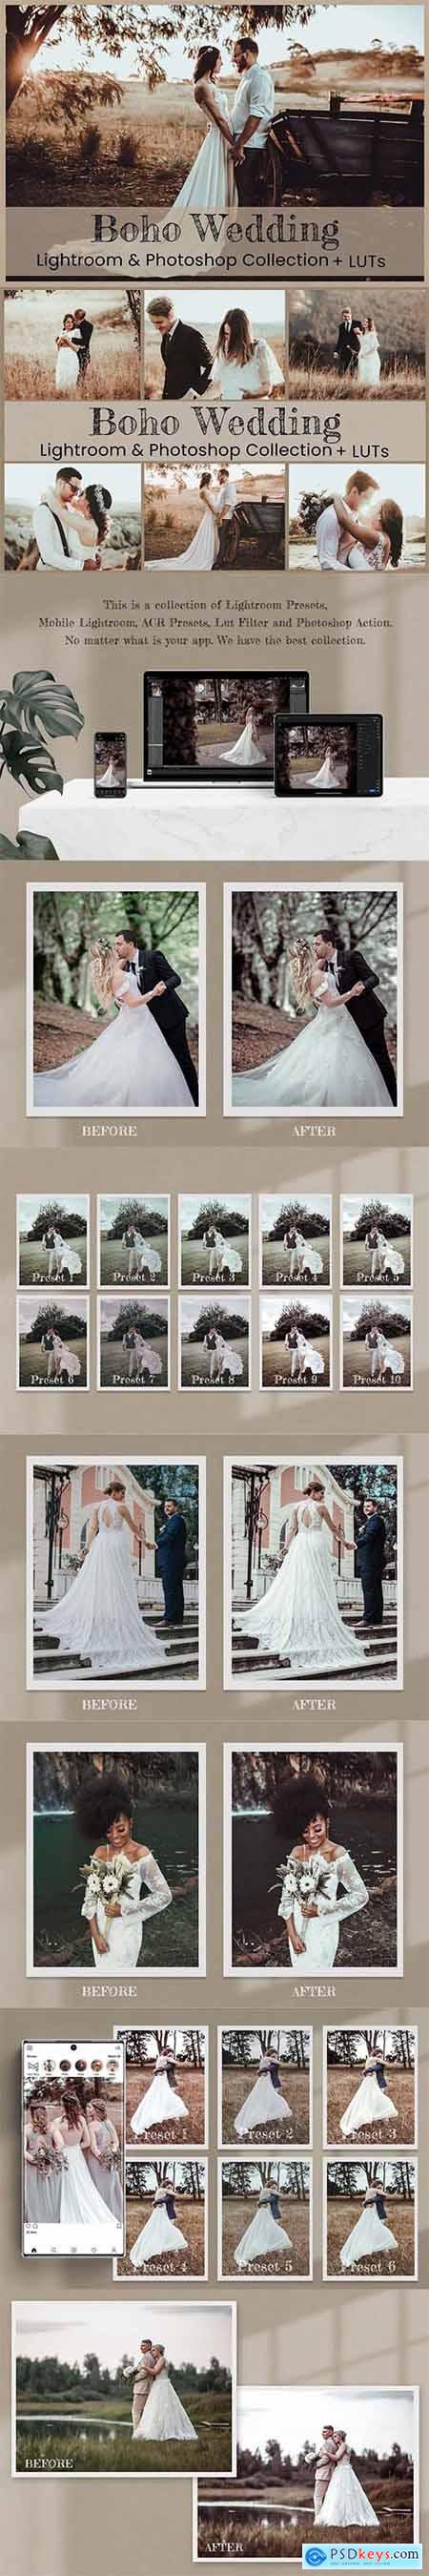 Boho Wedding Photoshop Actions 6284731